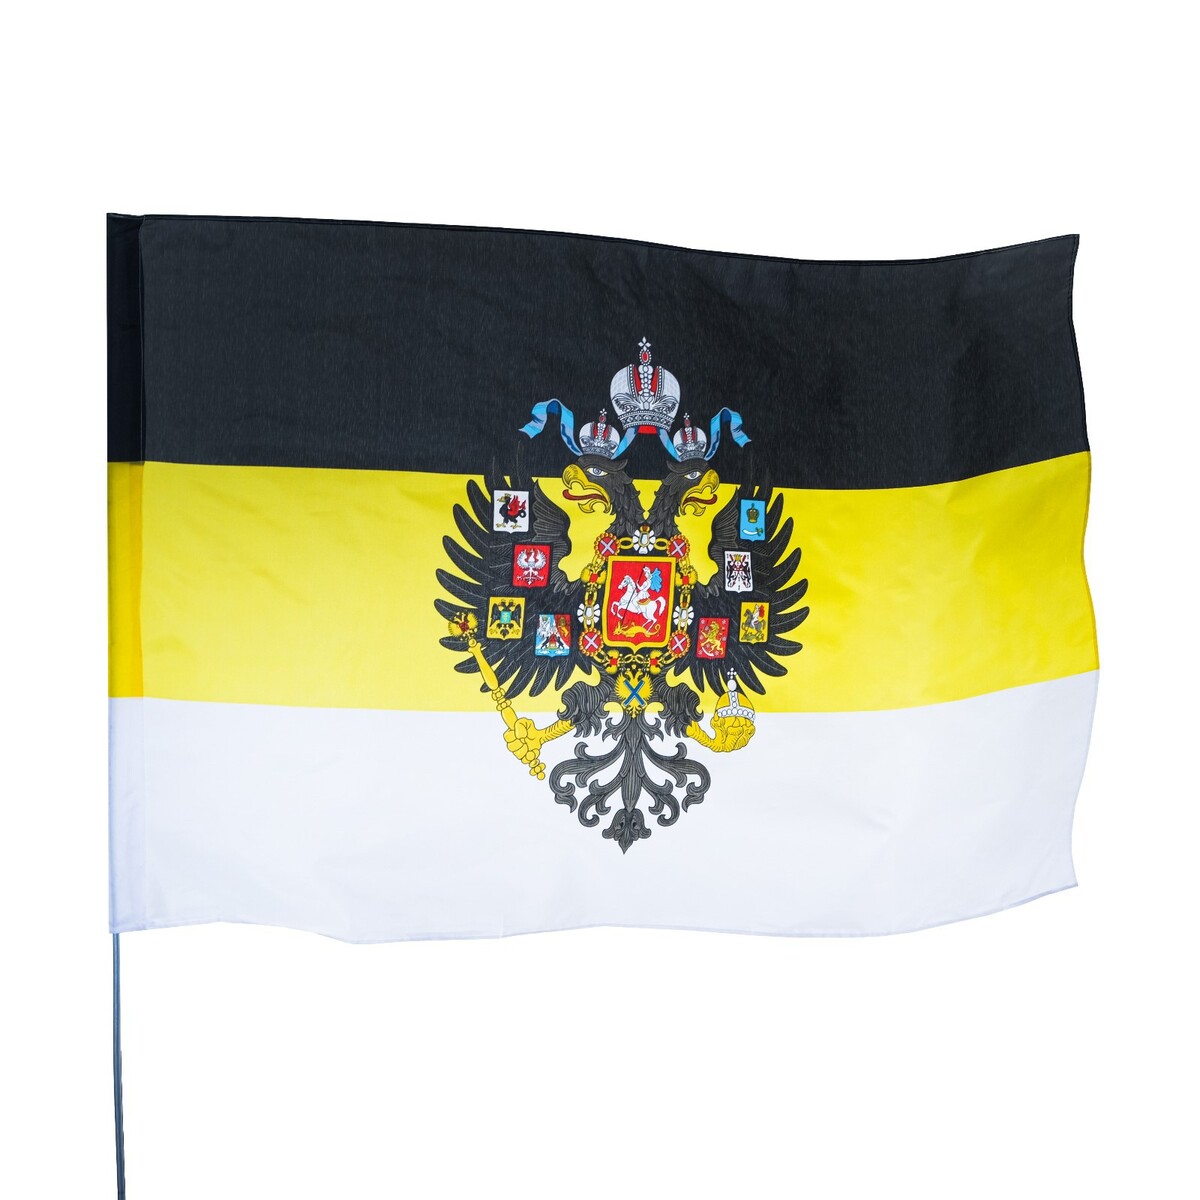 Флаг российской империи с гербом, 135 х 90 см, полиэстер, без древка основы теории новой российской империи